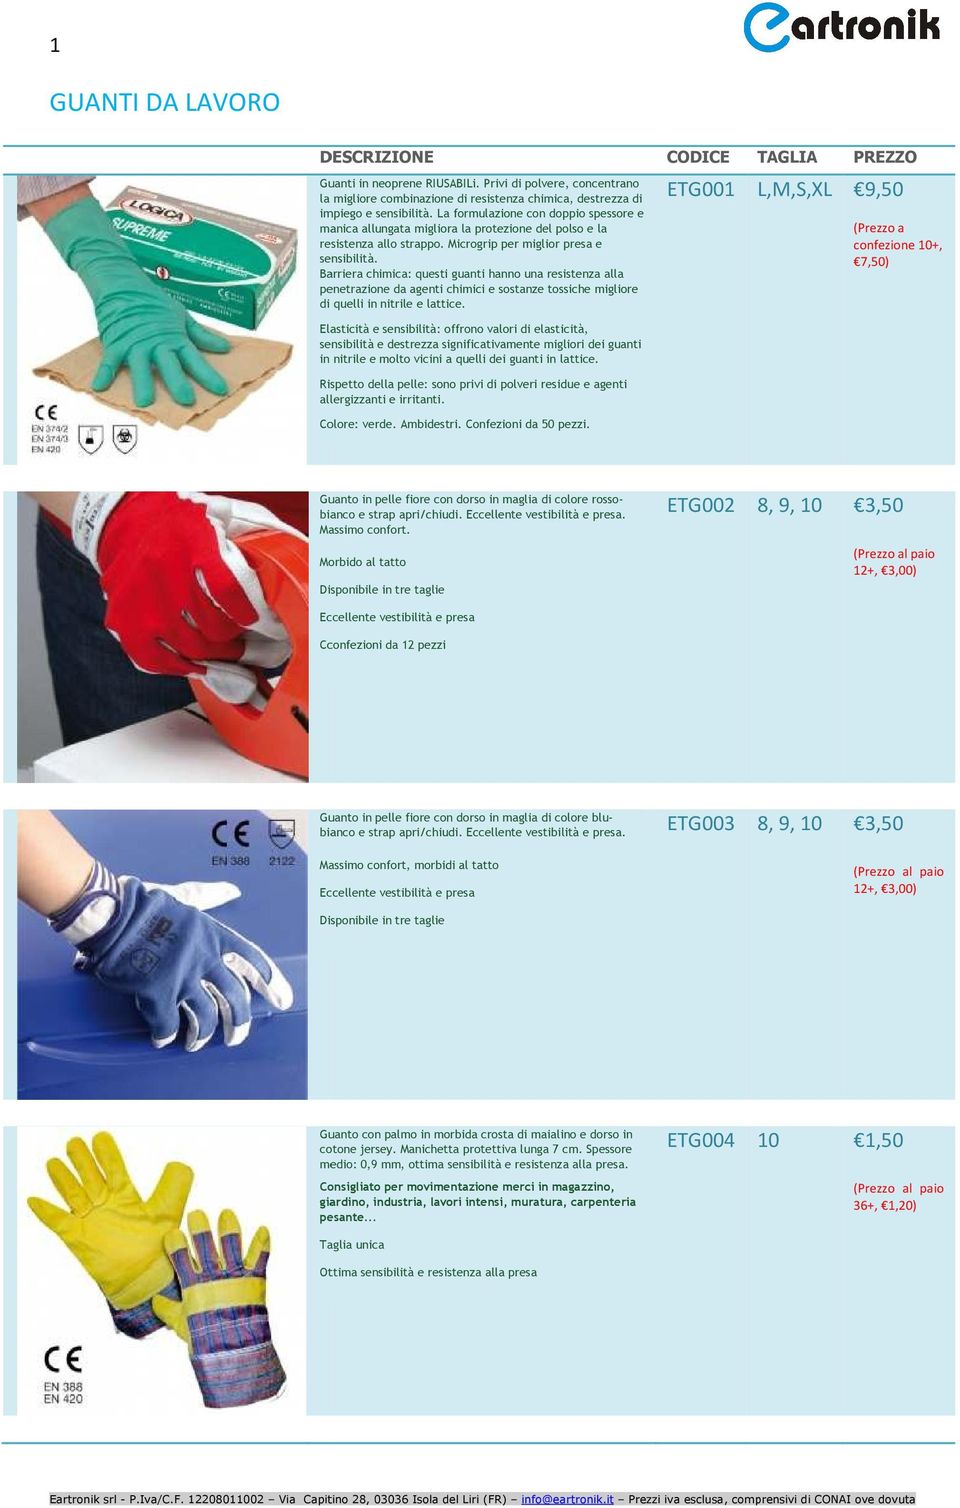 Barriera chimica: questi guanti hanno una resistenza alla penetrazione da agenti chimici e sostanze tossiche migliore di quelli in nitrile e lattice.